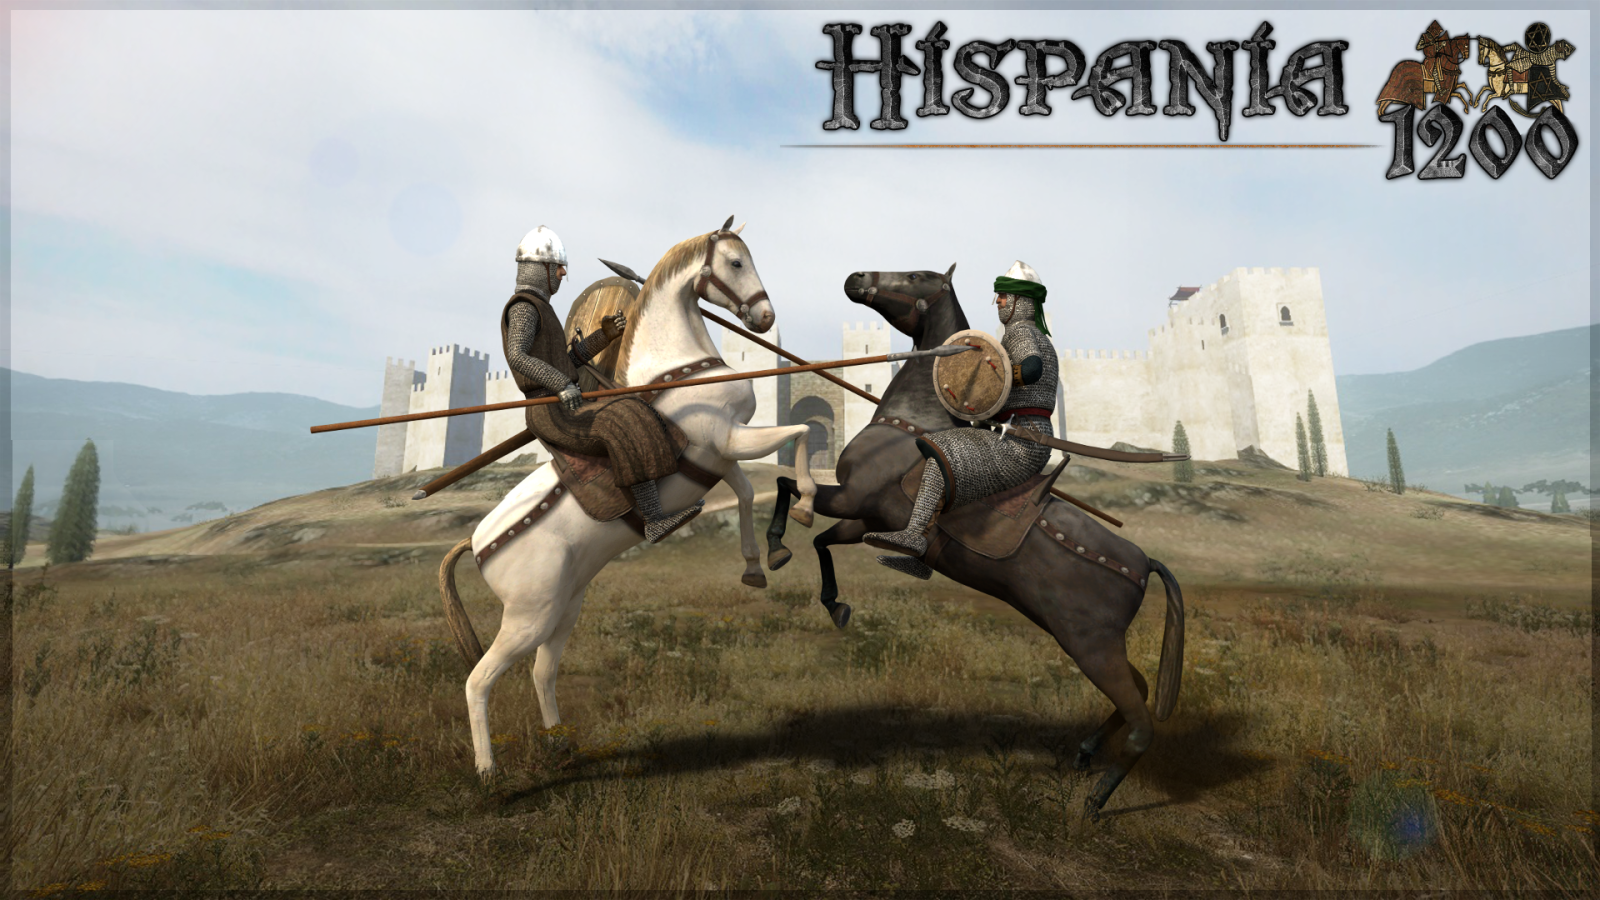 Hispania 1200 información y descarga  2e4fc7o_1